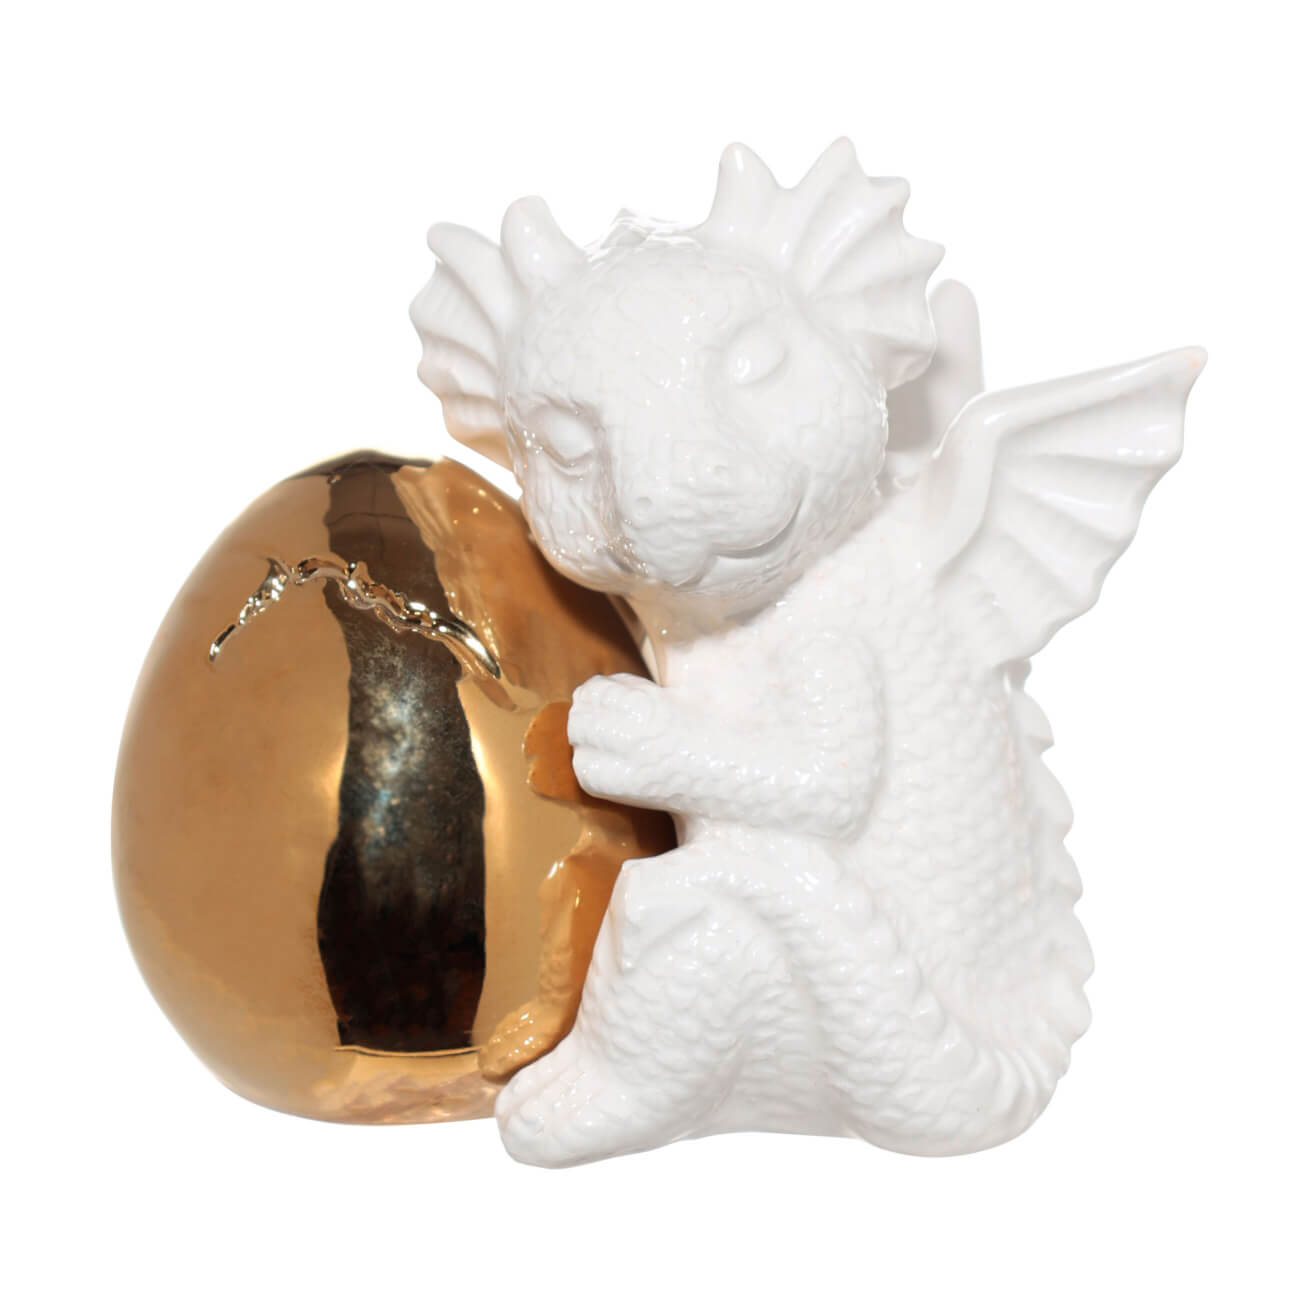 Набор для соли и перца, 9 см, с магнитом, керамика, золотистый/белый, Дракон и яйцо, Dragon cute изображение № 1